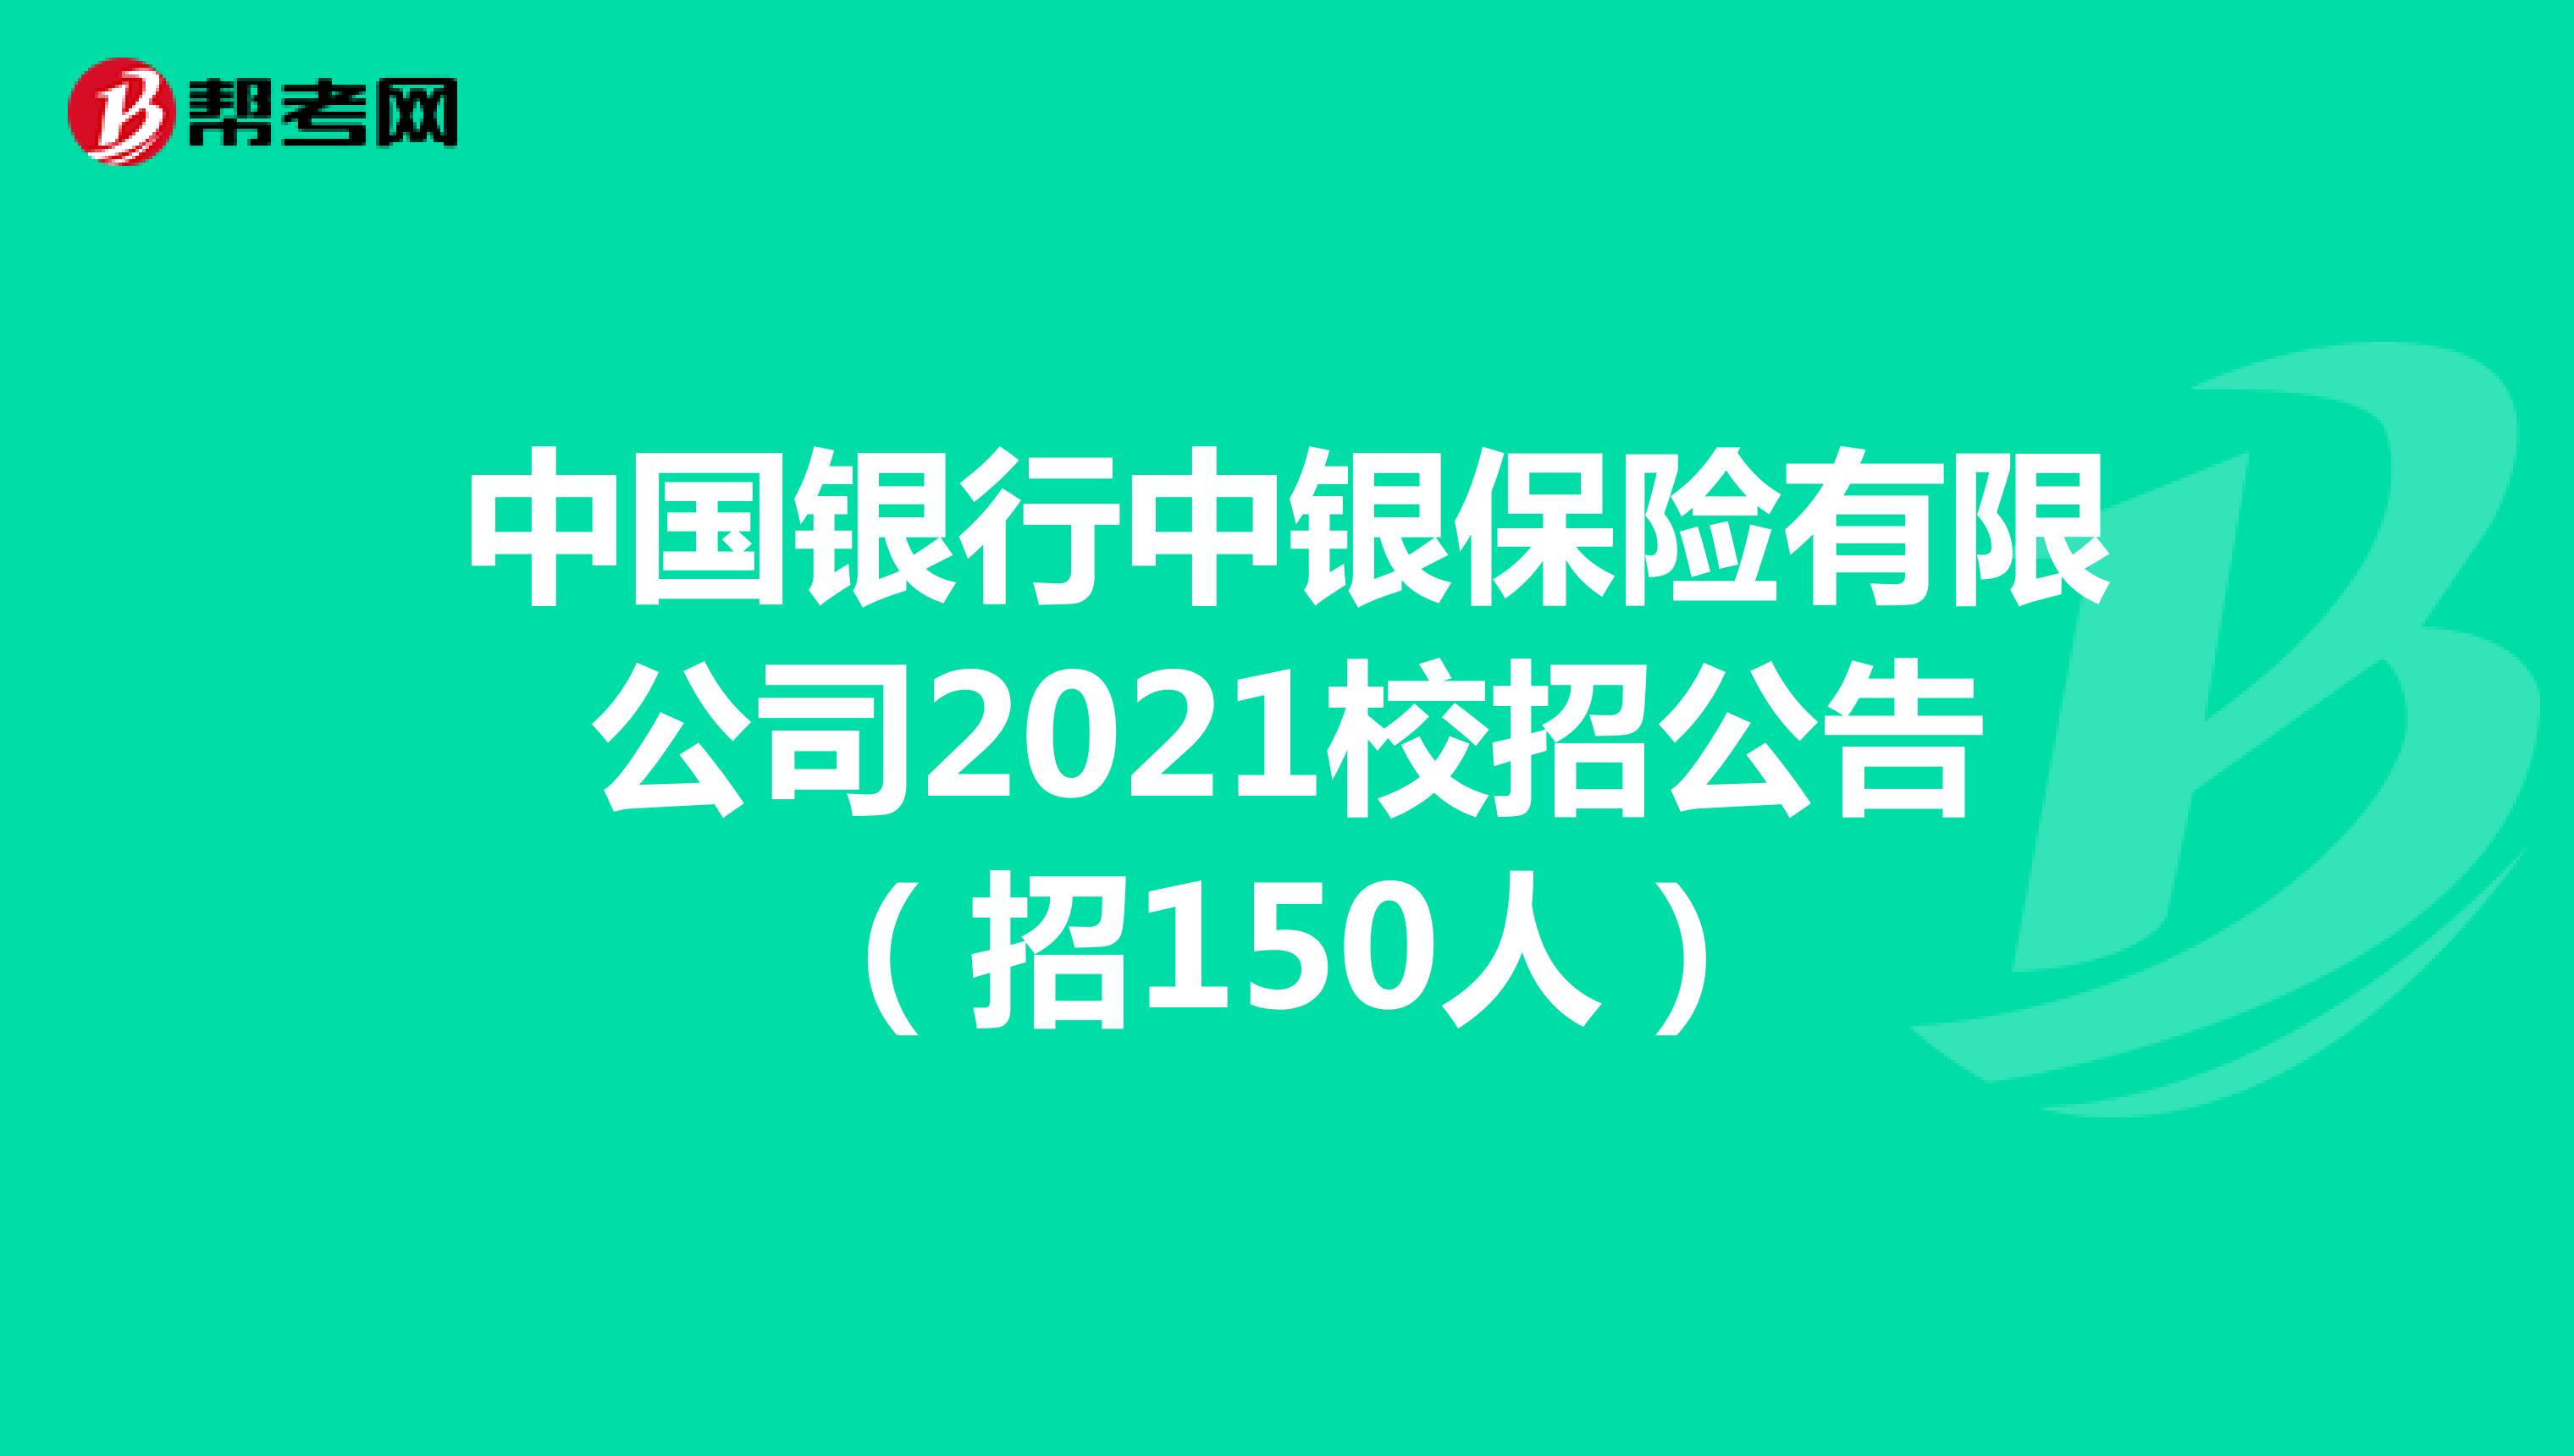 中国银行中银保险有限公司2021校招公告（招150人）